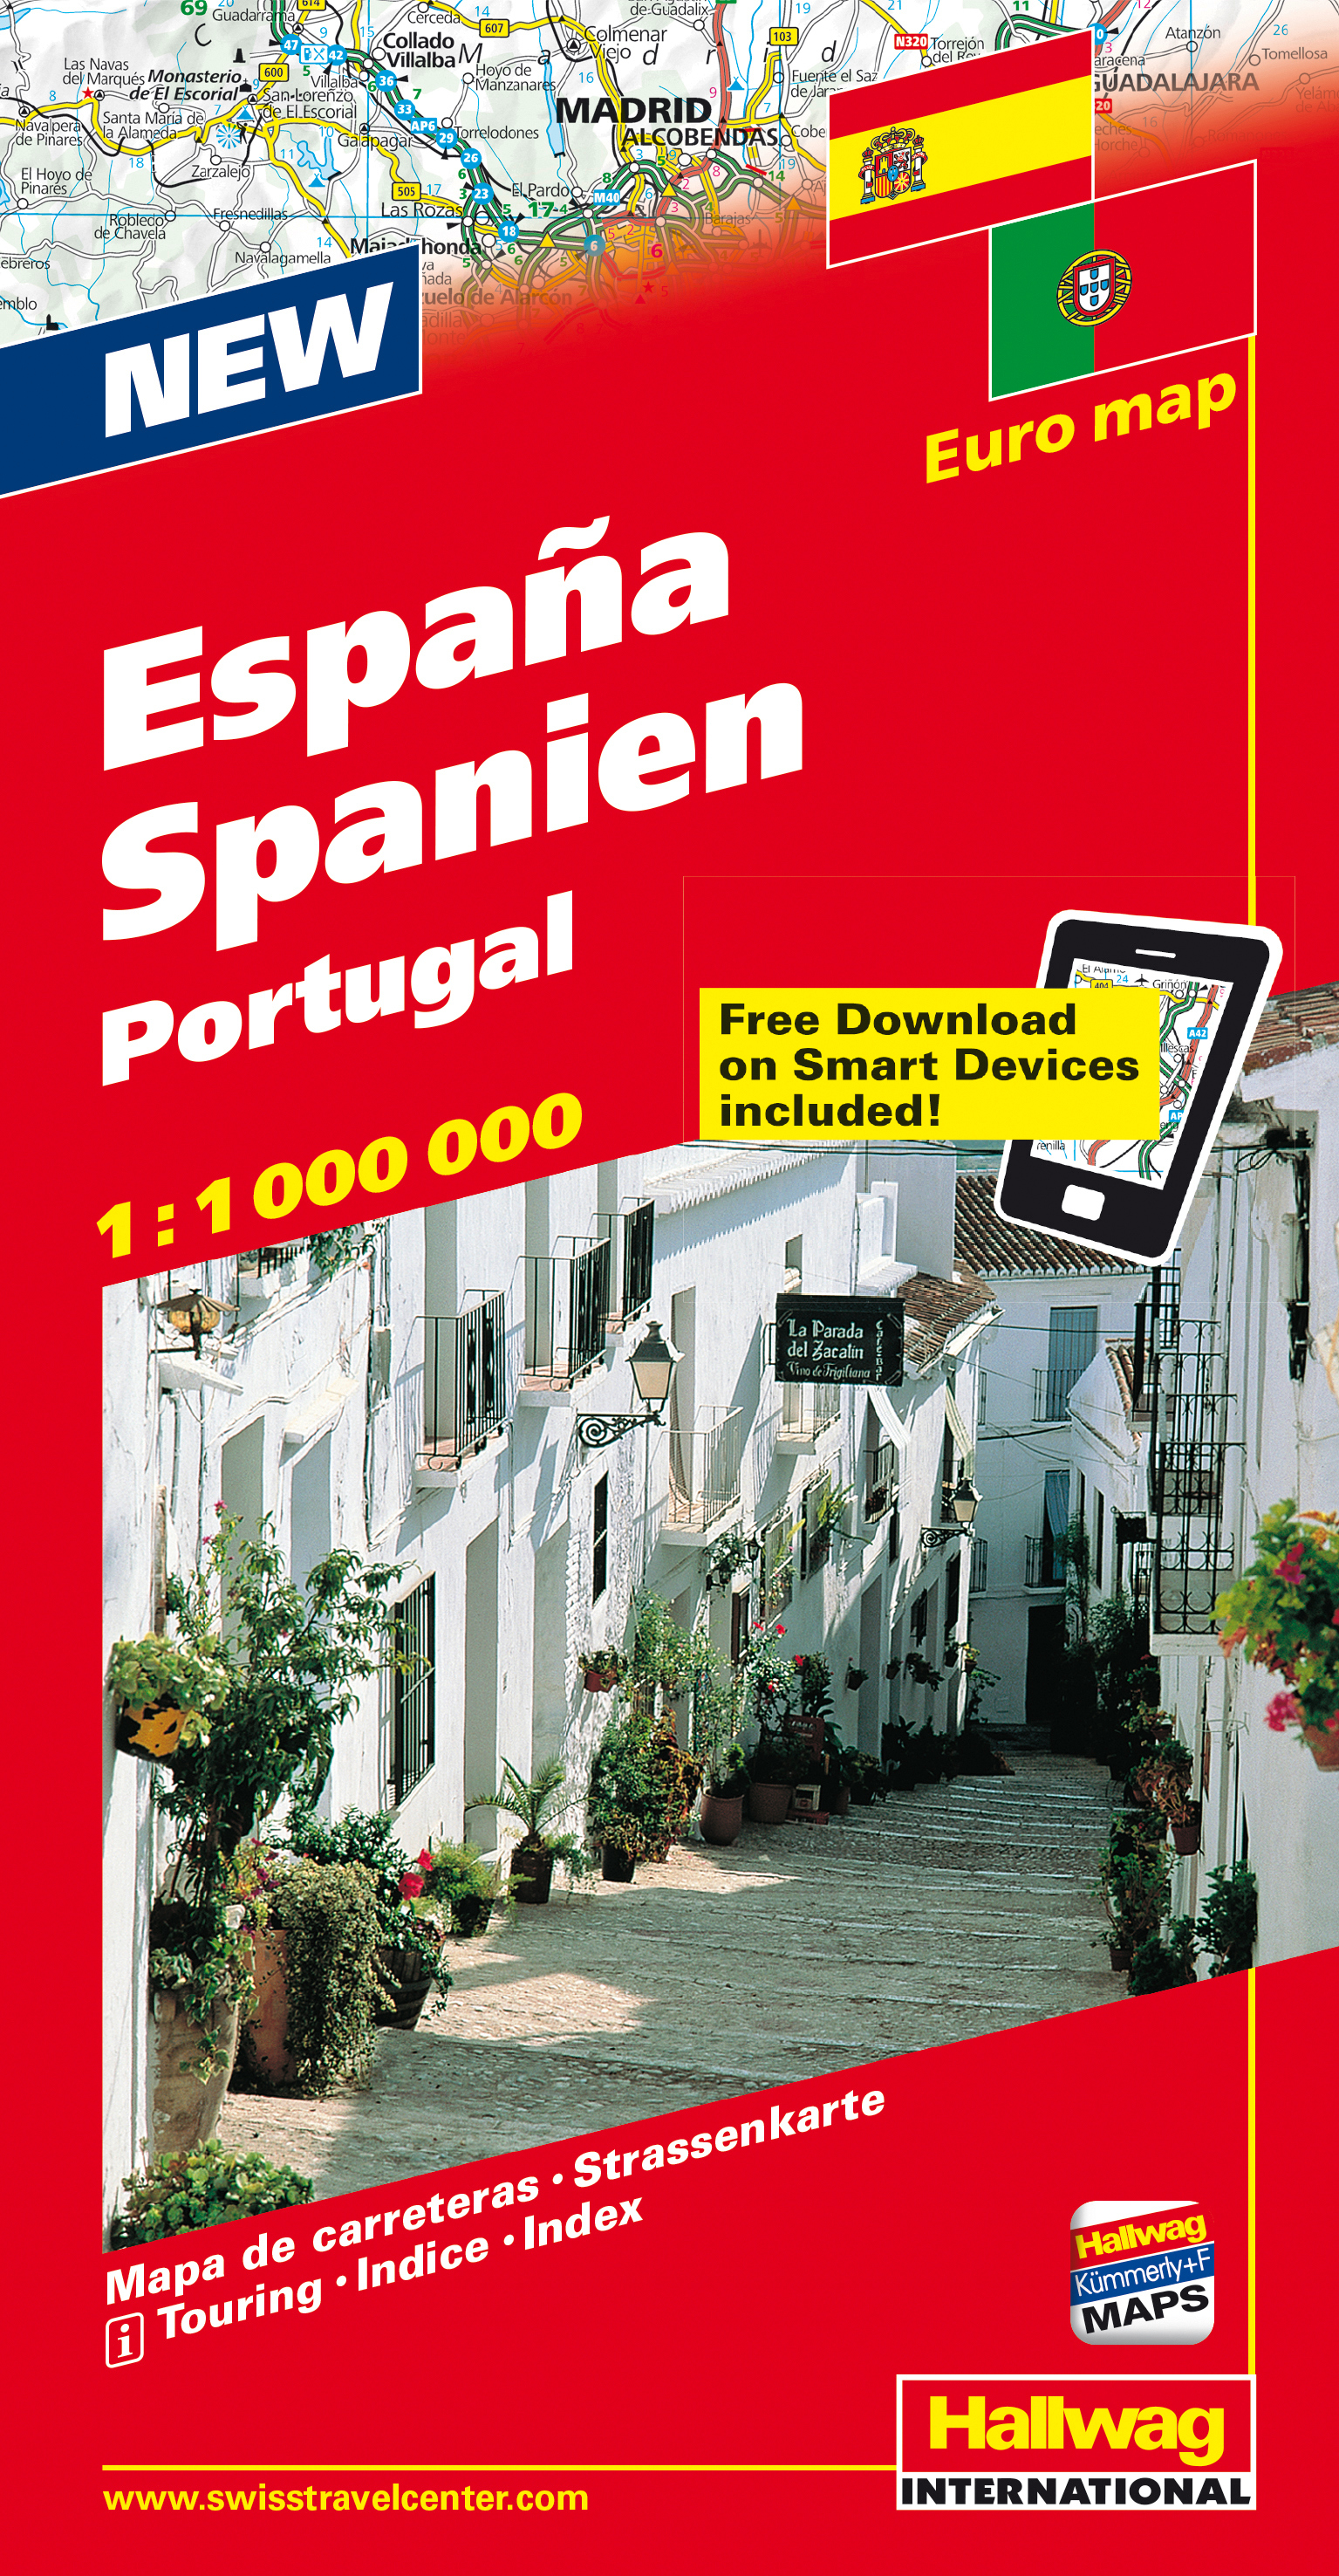 HALLWAG Strassenkarte 382830926 Spanien-Portugal 1:1 Mio.